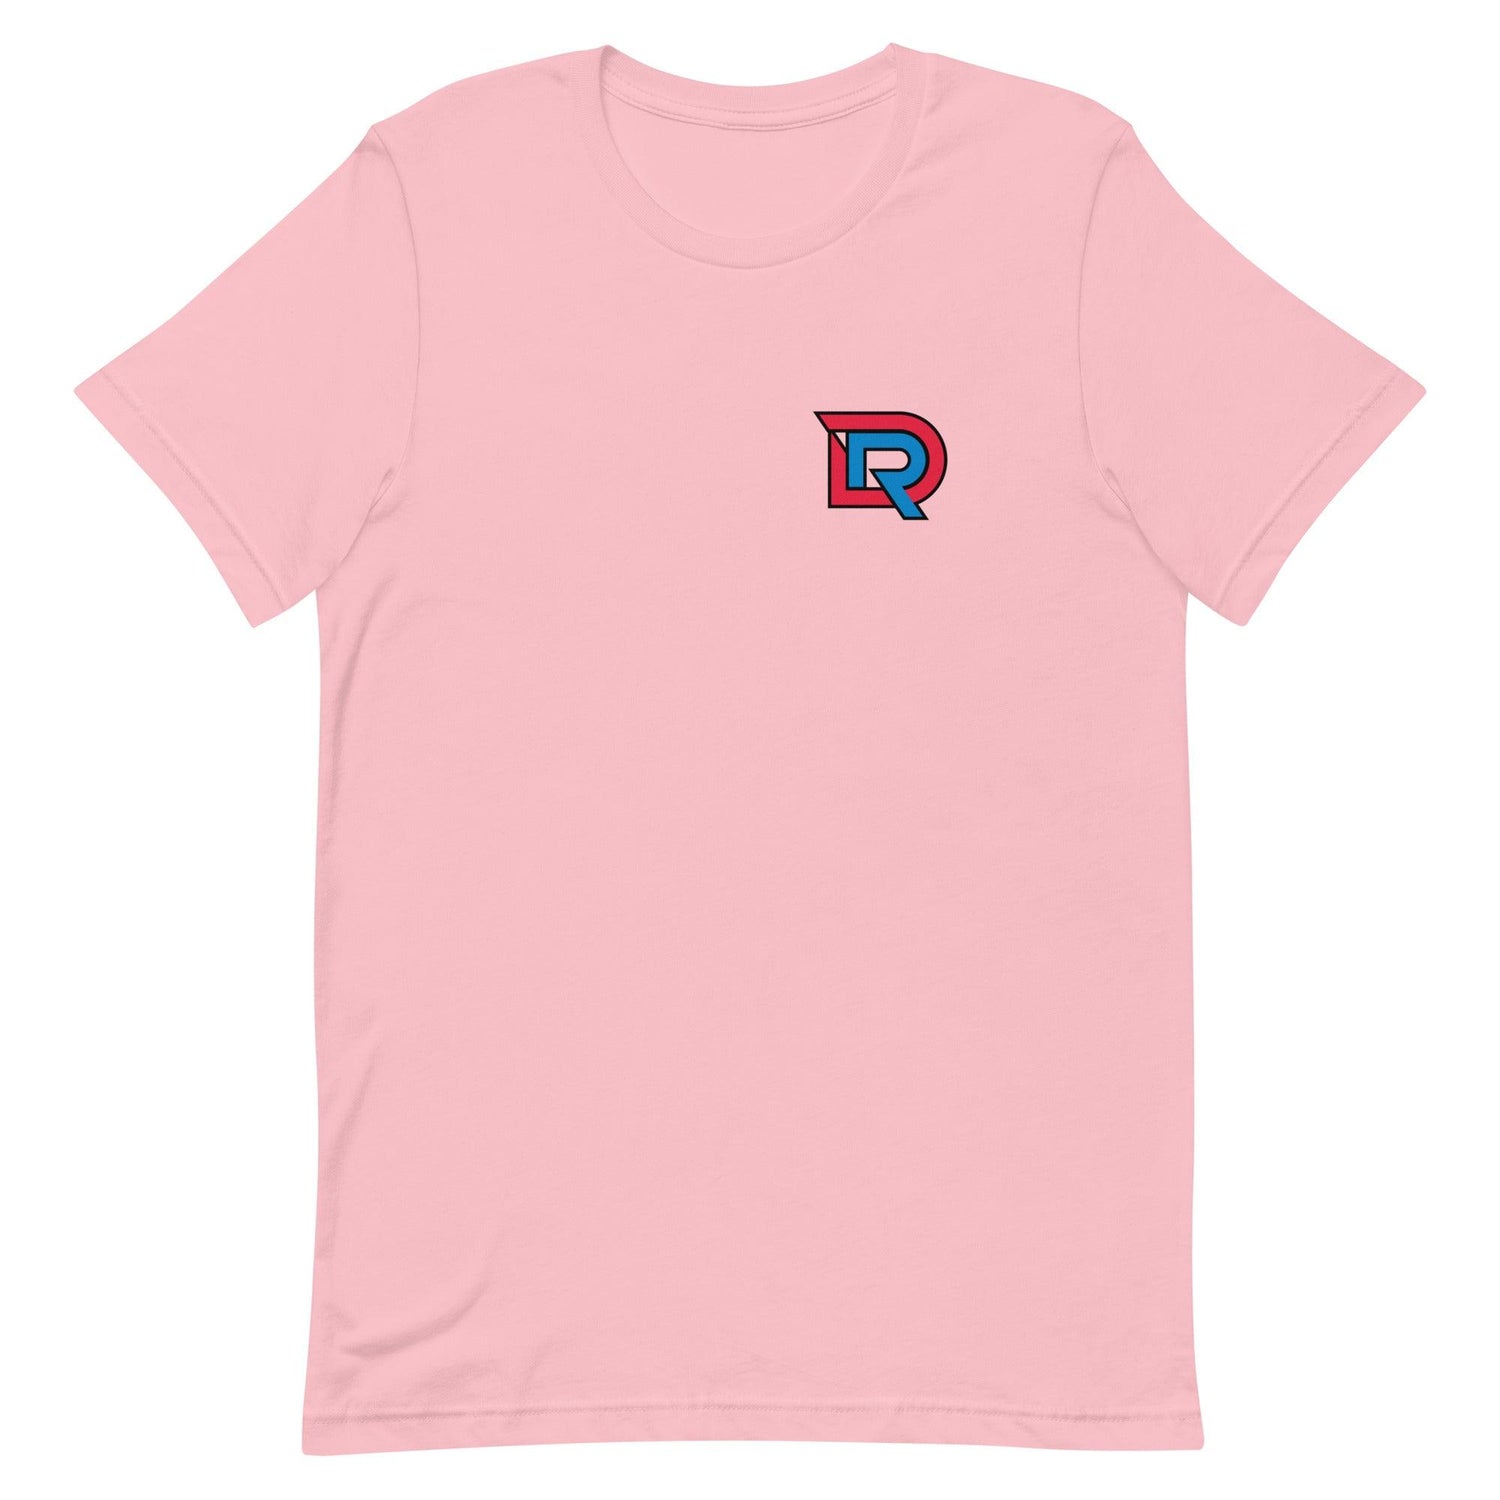 Darrione Rogers "Elite" t-shirt - Fan Arch